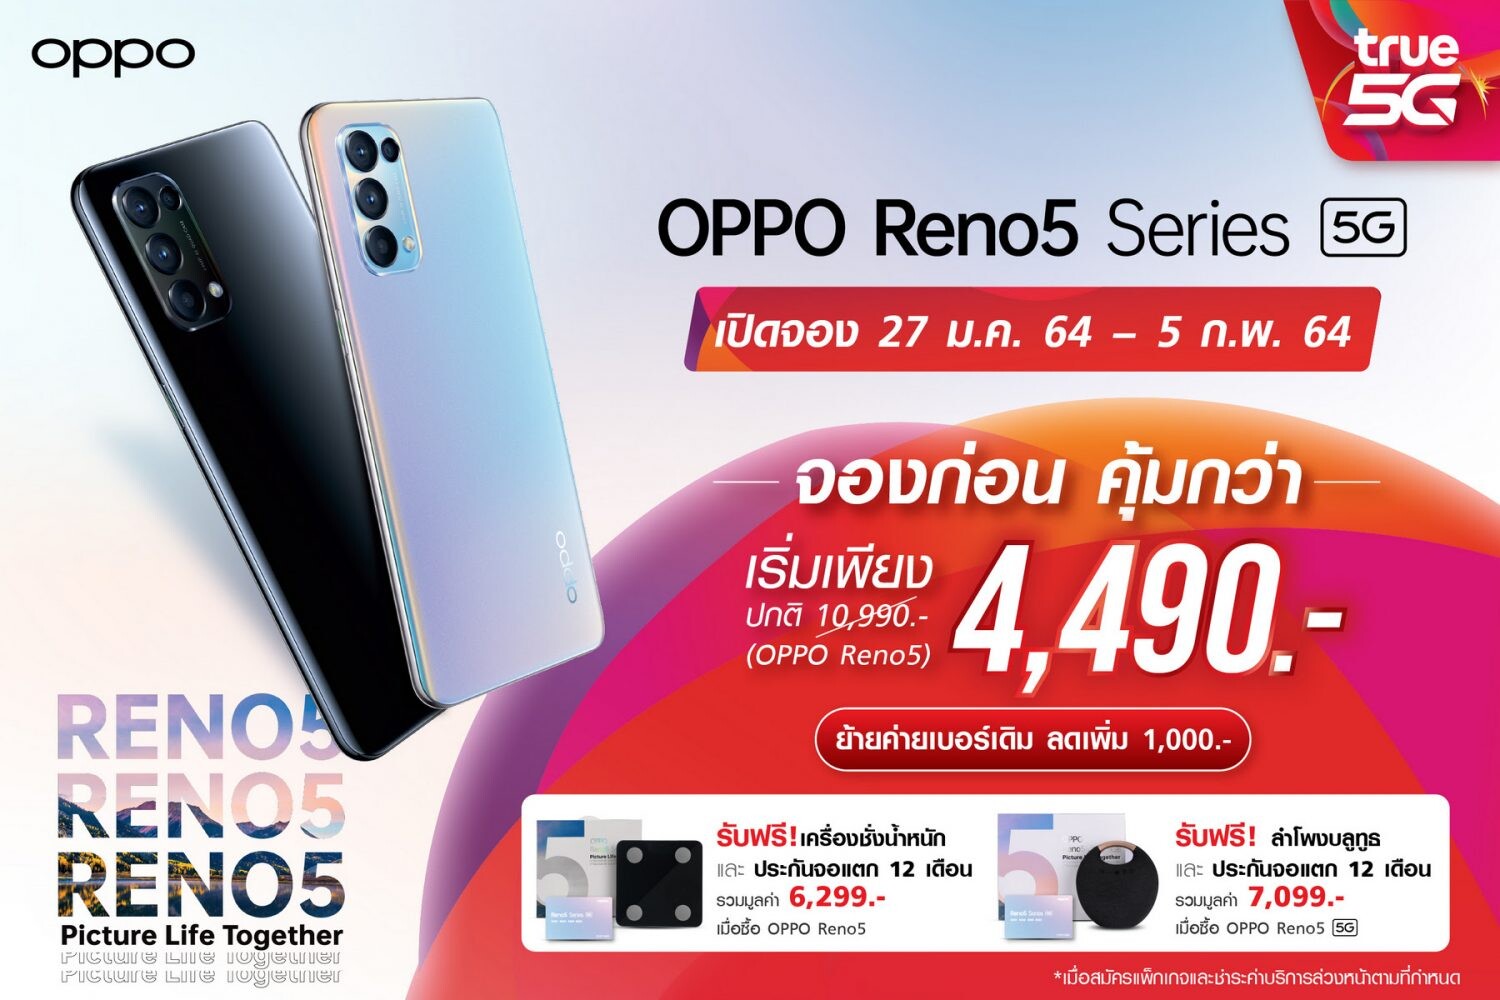 เปิดโปรเด็ดจาก ทรู 5G จอง OPPO Reno5 Series 5G ราคาดี 4,490 บาท สมาร์ทโฟนสำหรับตัวจริงเรื่องโซเชียล บนเครือข่ายอัจฉริยะ ทรู 5G